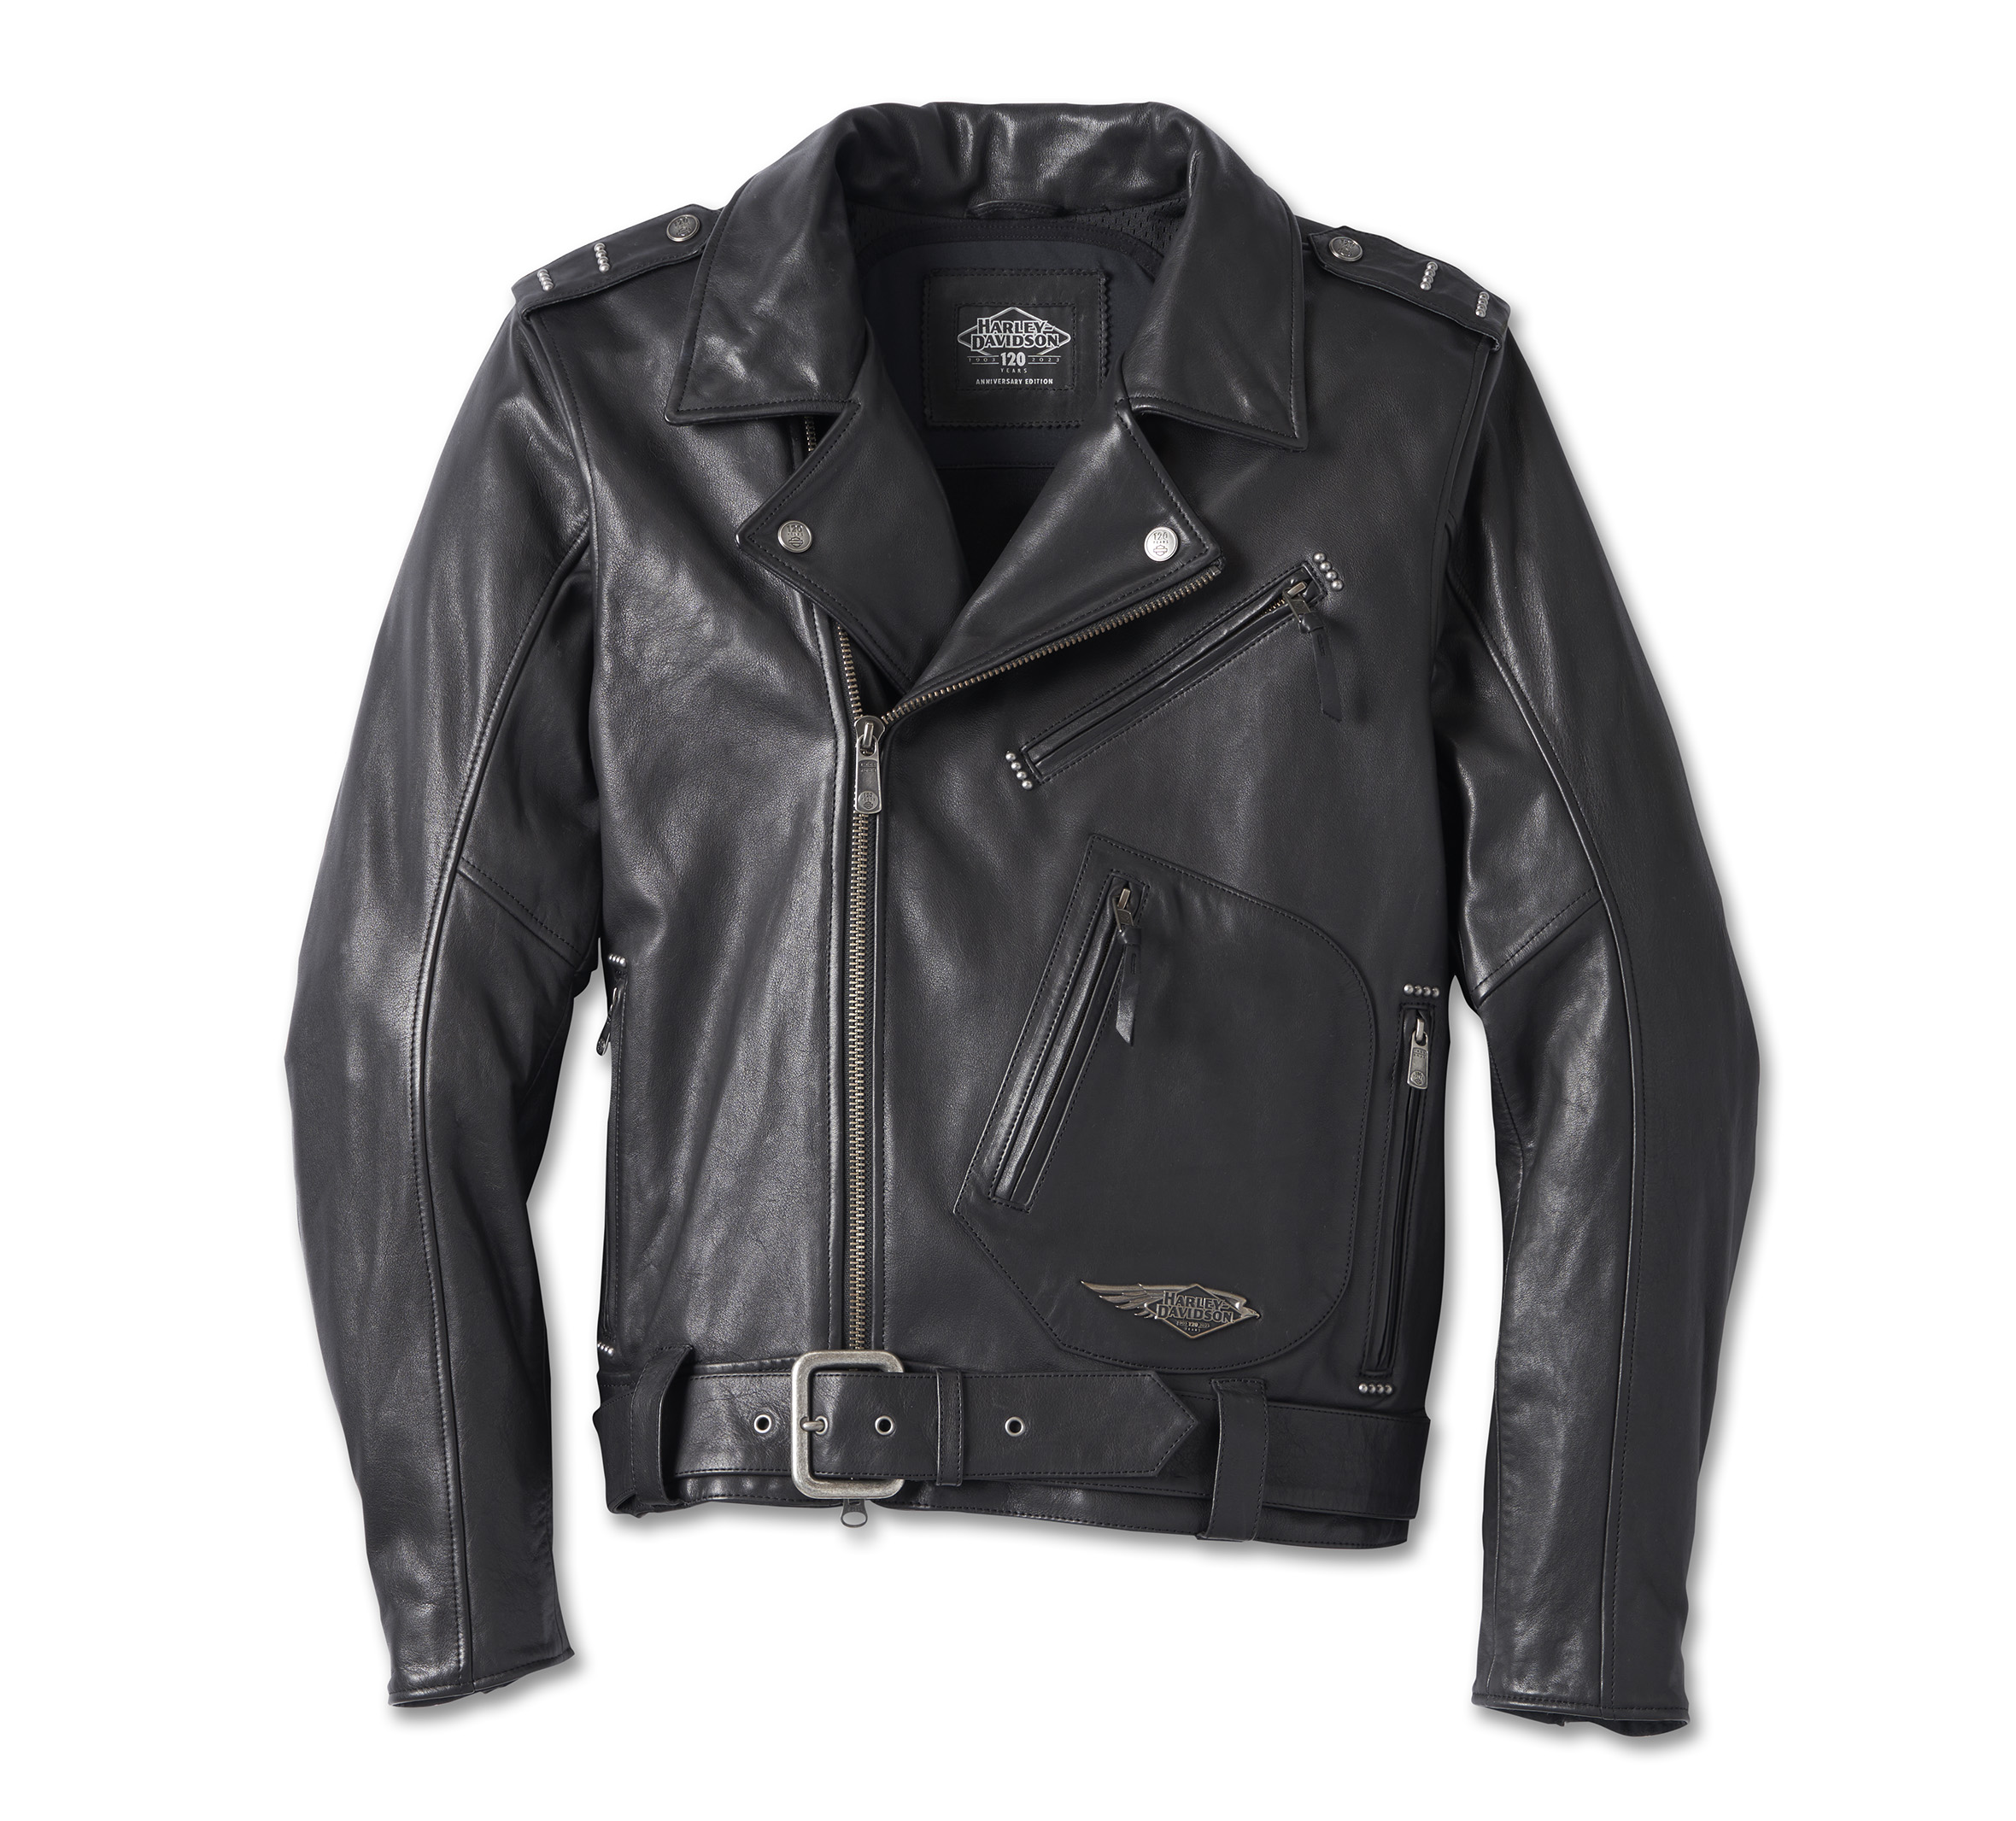 jacket black leather